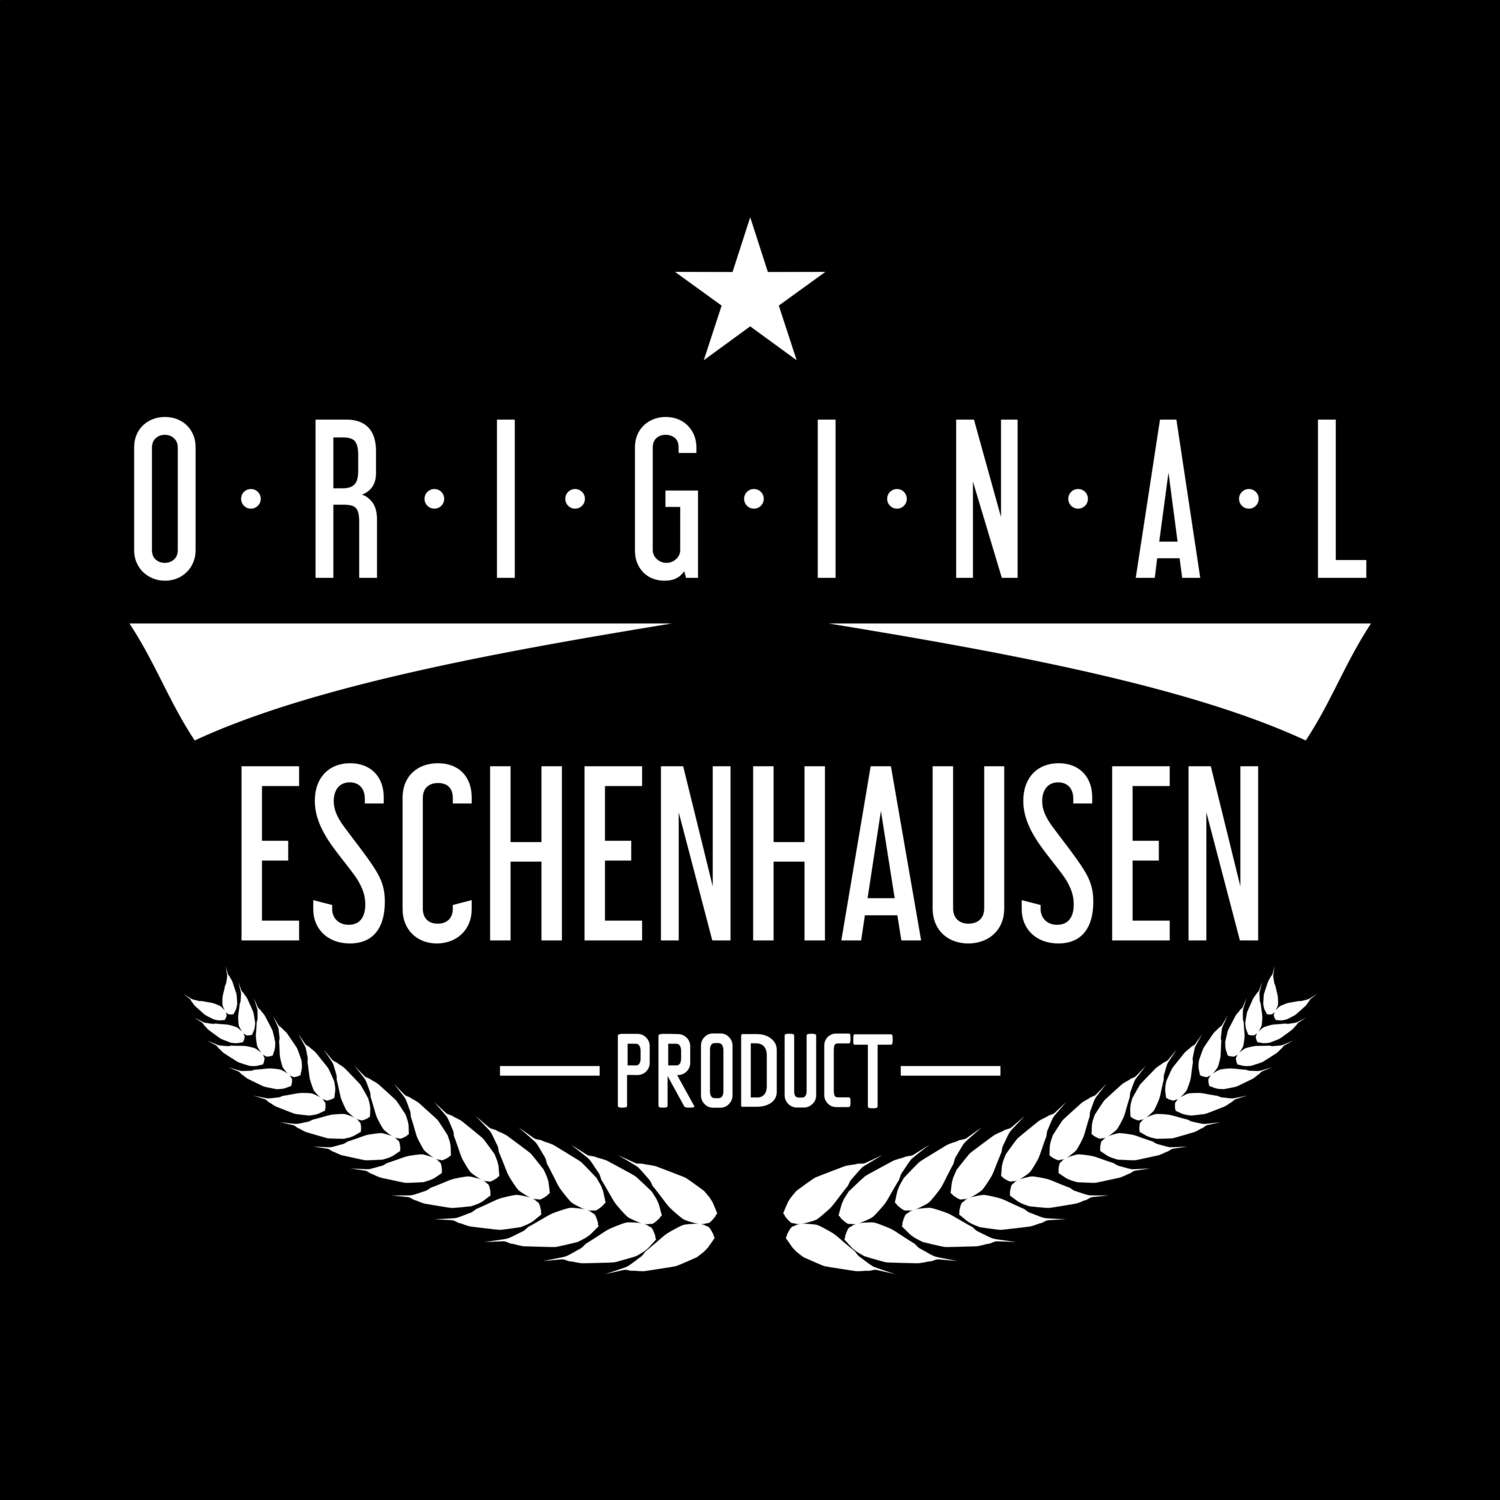 Eschenhausen T-Shirt »Original Product«